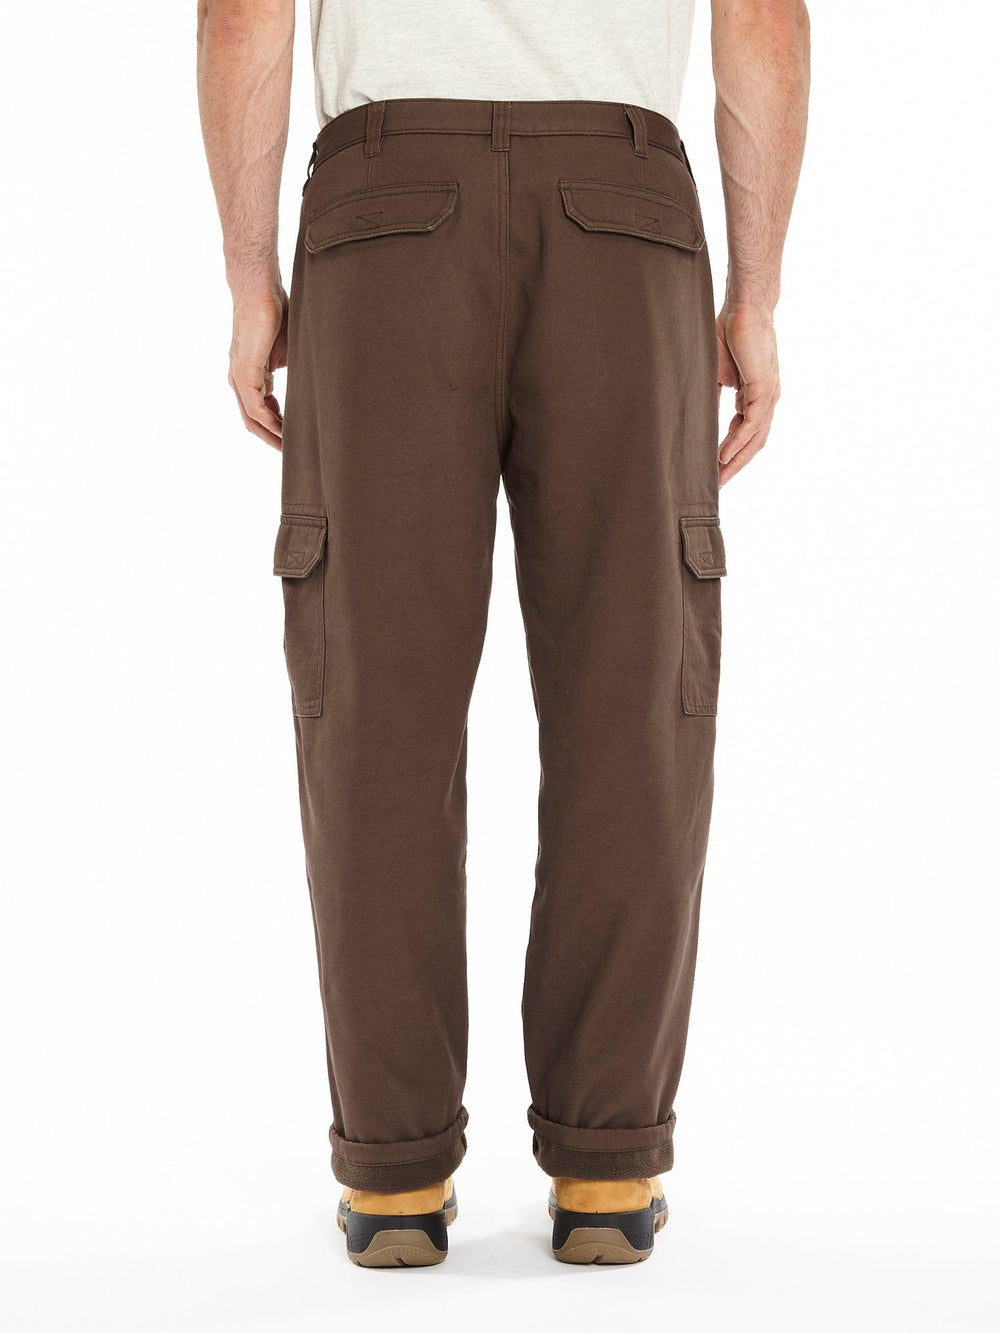 Buy Men's Travel Trekking Cargo Trousers Brown Online | Decathlon